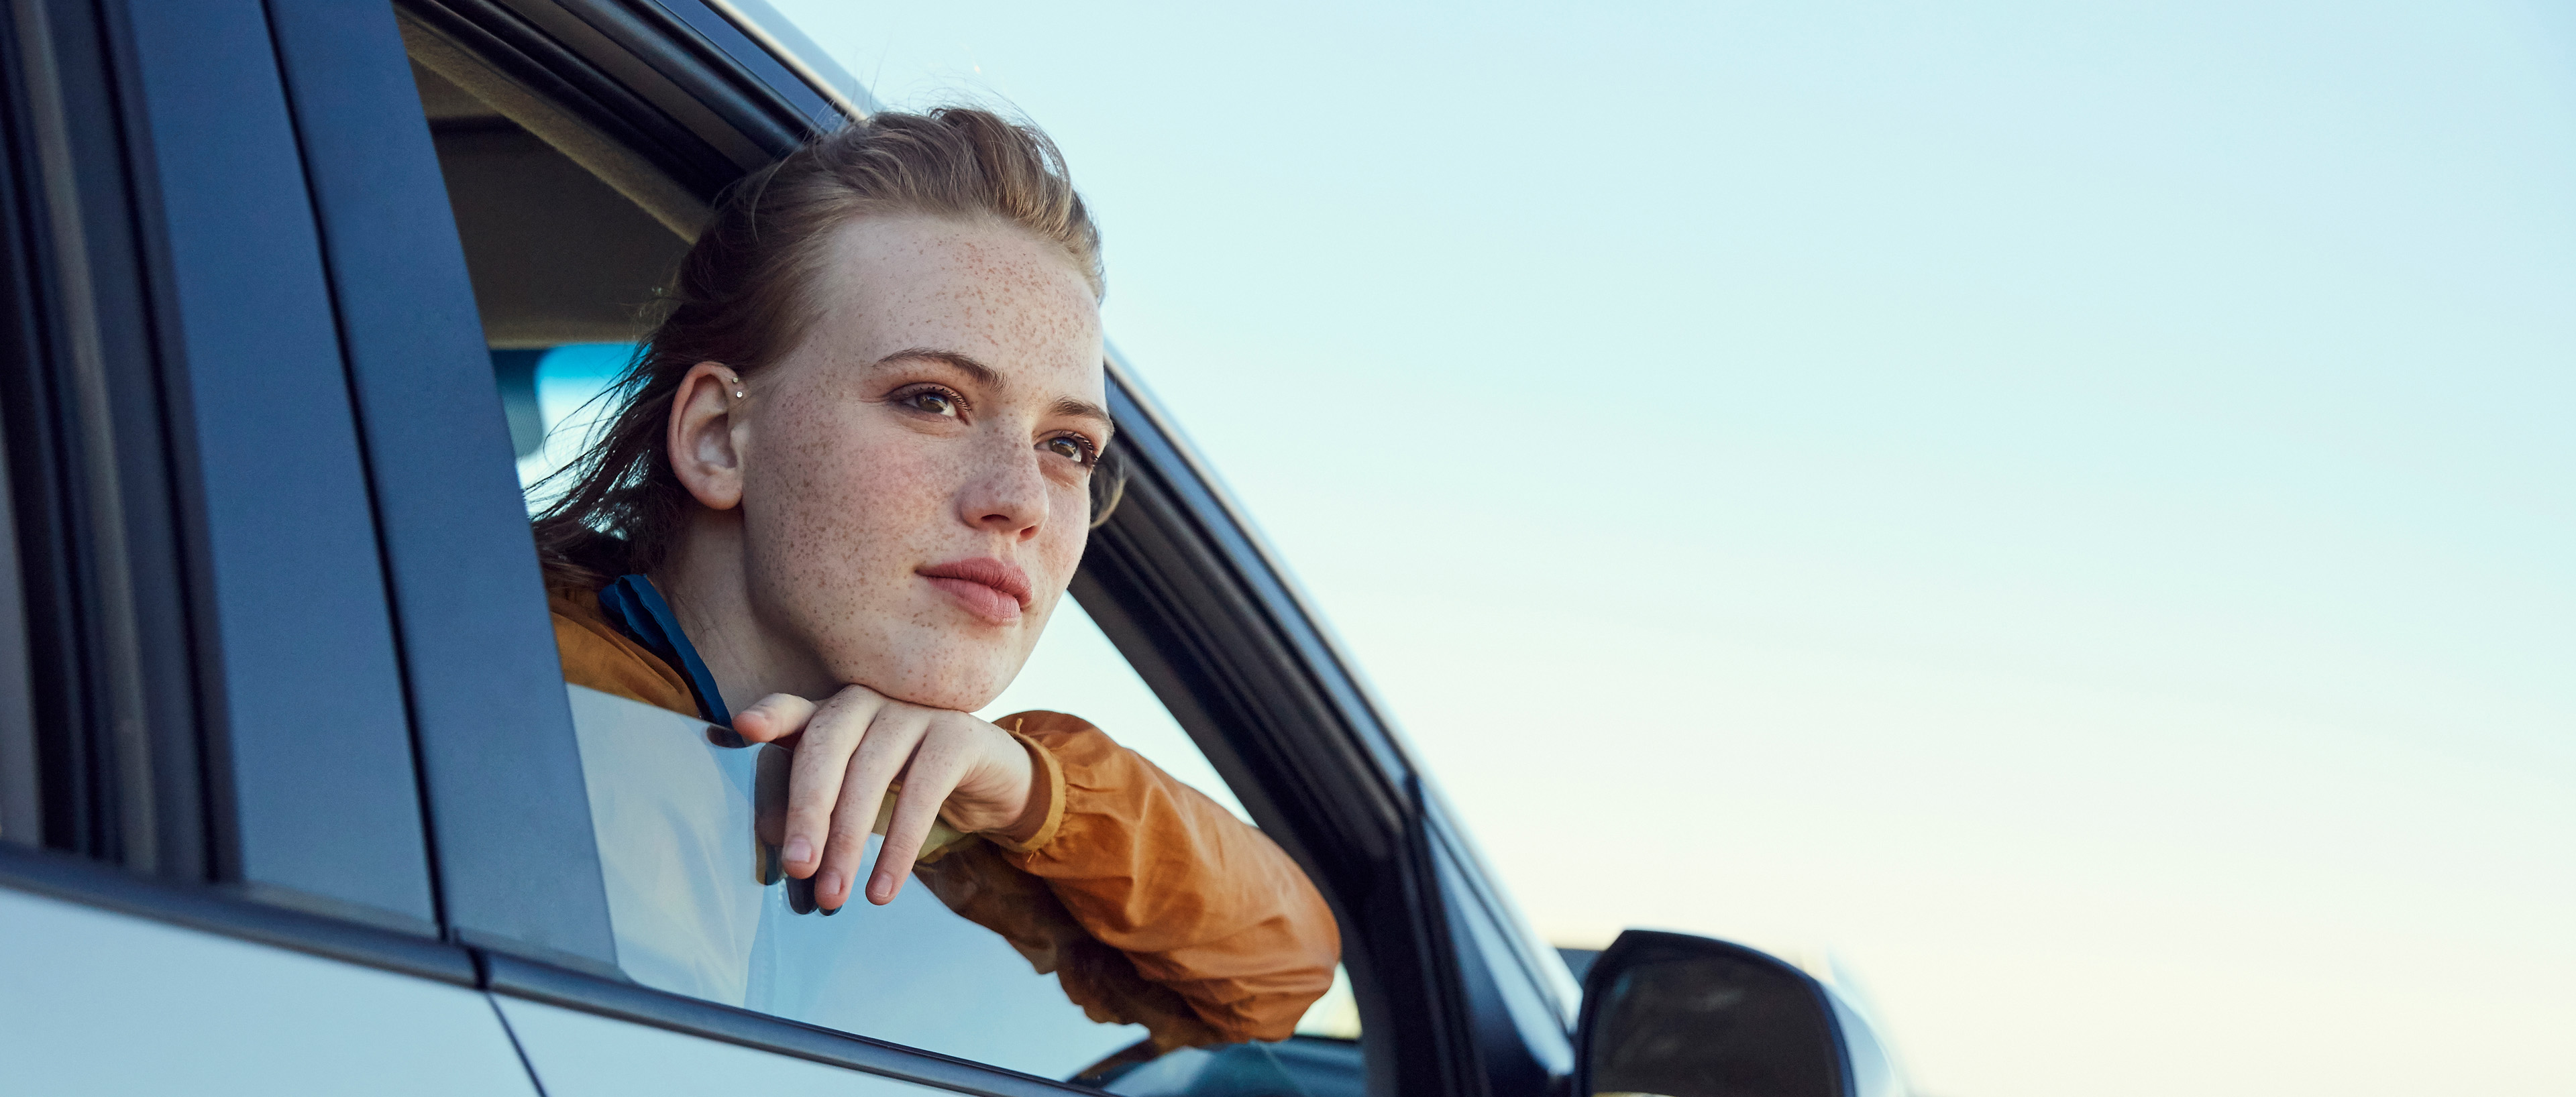 Mujer joven mirando desde un automóvil